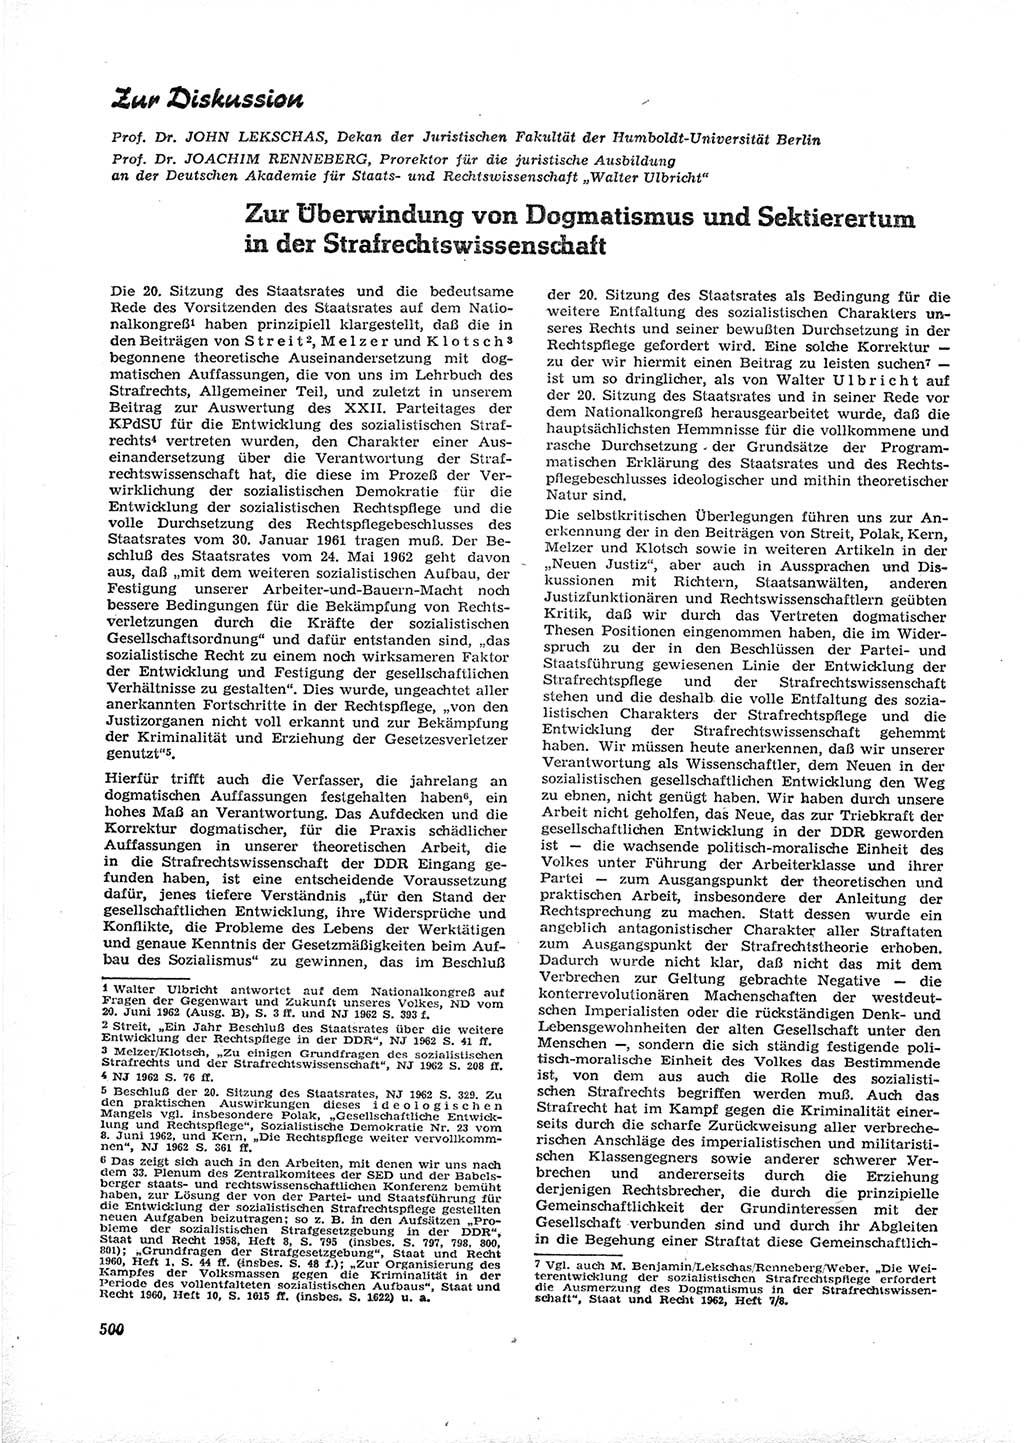 Neue Justiz (NJ), Zeitschrift für Recht und Rechtswissenschaft [Deutsche Demokratische Republik (DDR)], 16. Jahrgang 1962, Seite 500 (NJ DDR 1962, S. 500)